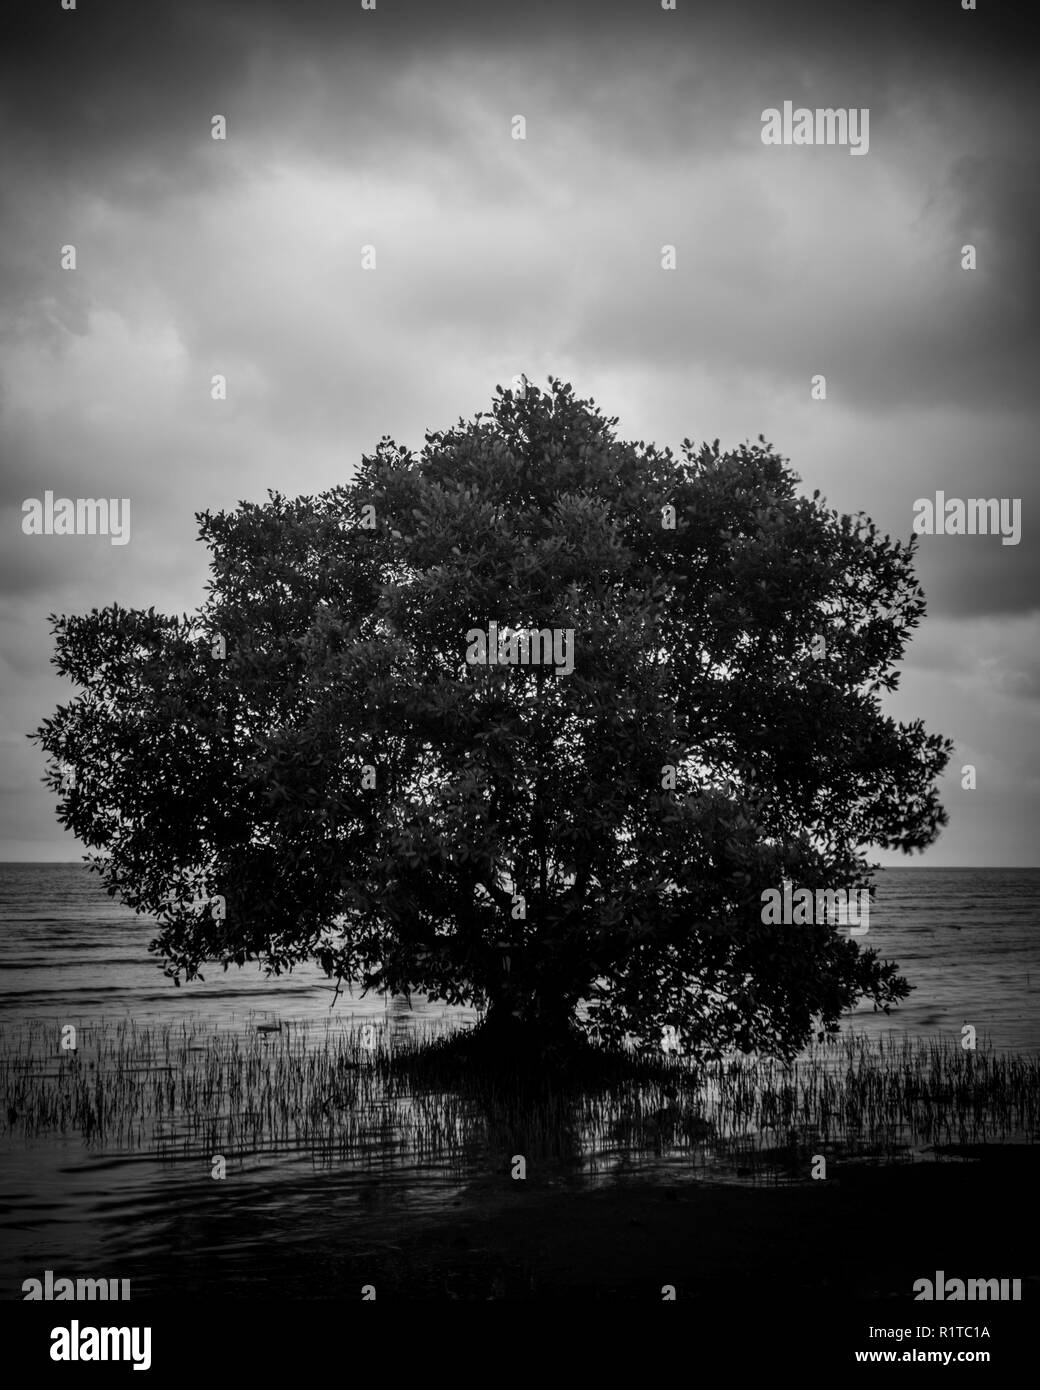 Immagine in bianco e nero di mangroove Tree sulla spiaggia il giorno nuvoloso Foto Stock